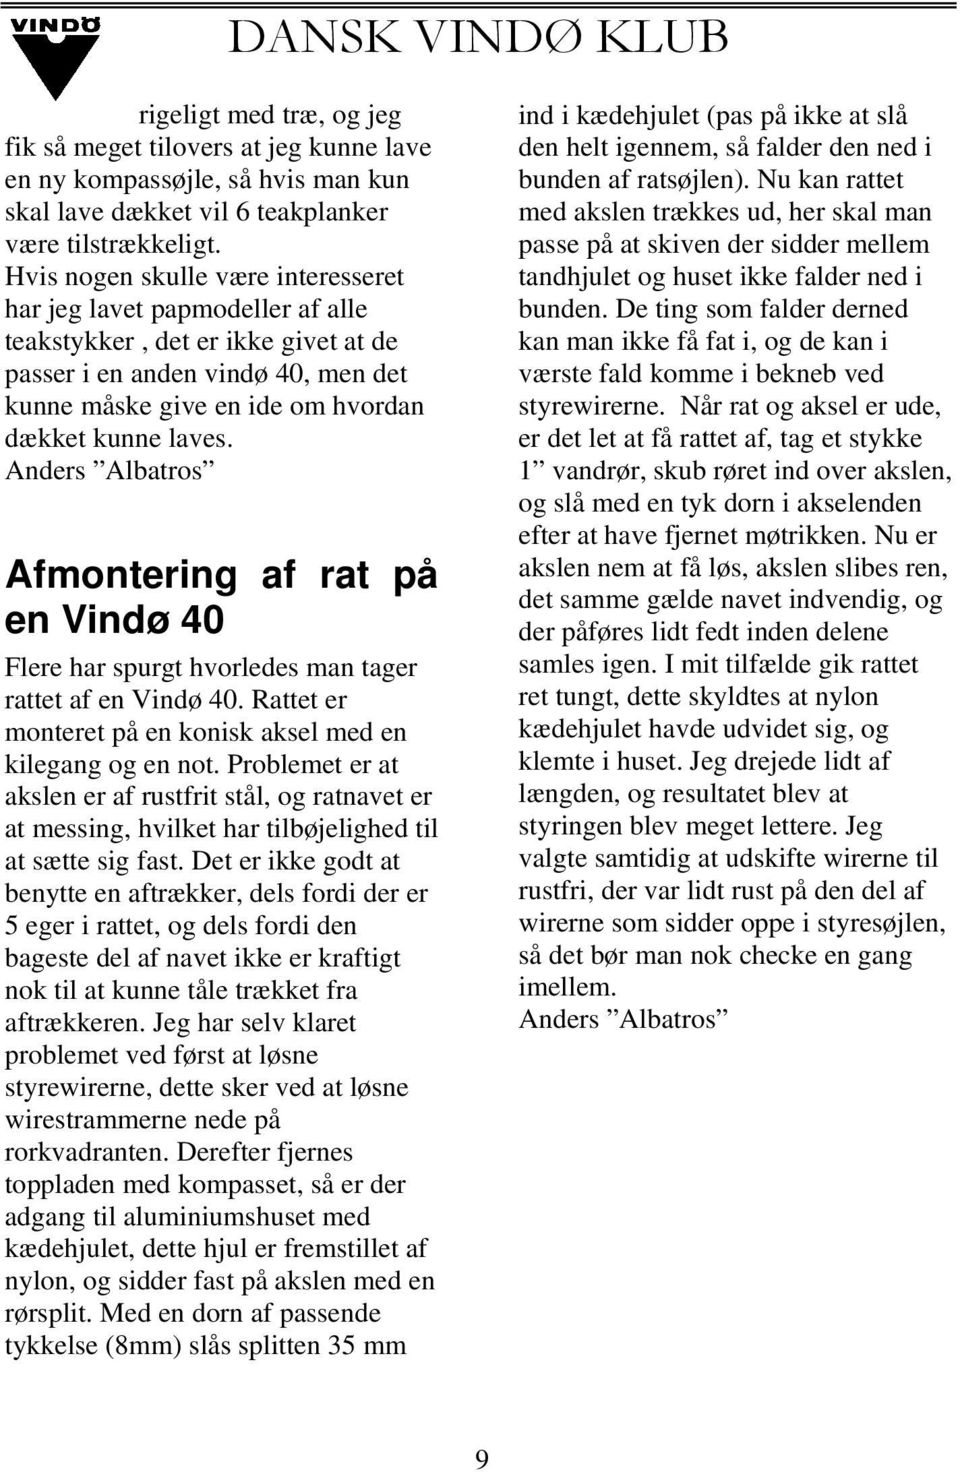 Anders Albatros Afmontering af rat på en Vindø 40 Flere har spurgt hvorledes man tager rattet af en Vindø 40. Rattet er monteret på en konisk aksel med en kilegang og en not.